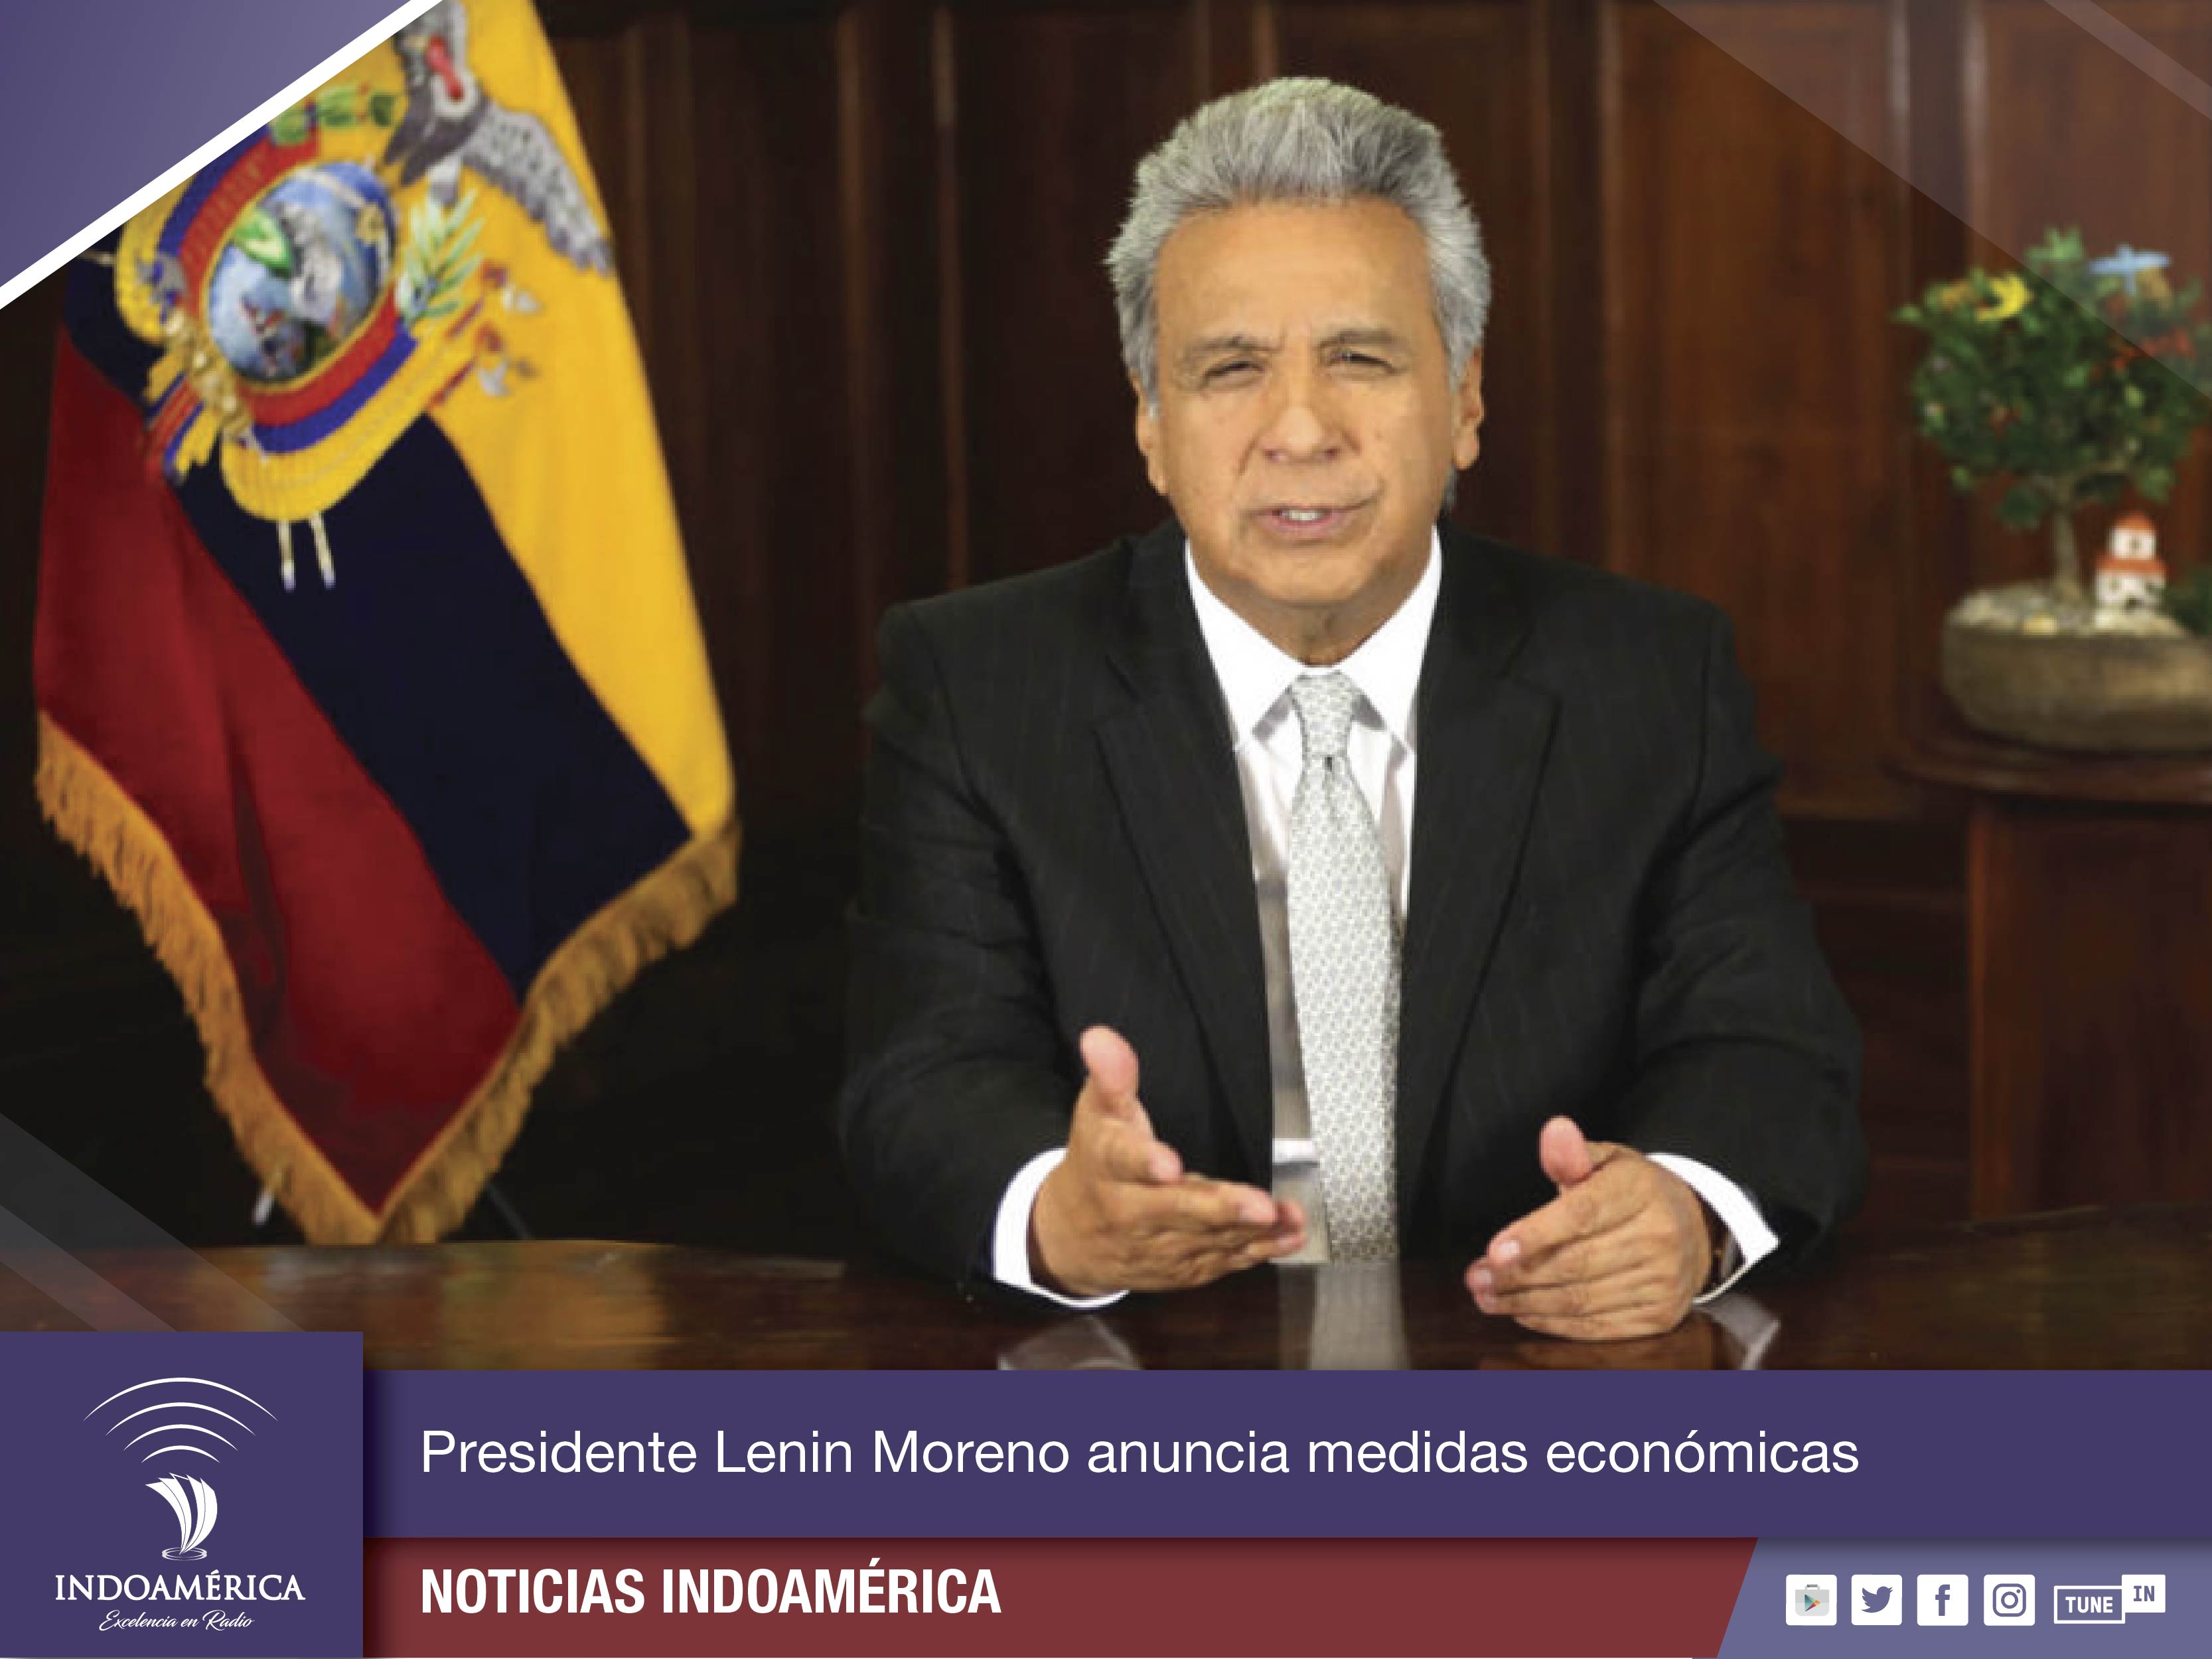 Lenin Moreno anuncia medidas económicas y llama a las fuerzas políticas a un acuerdo de unidad